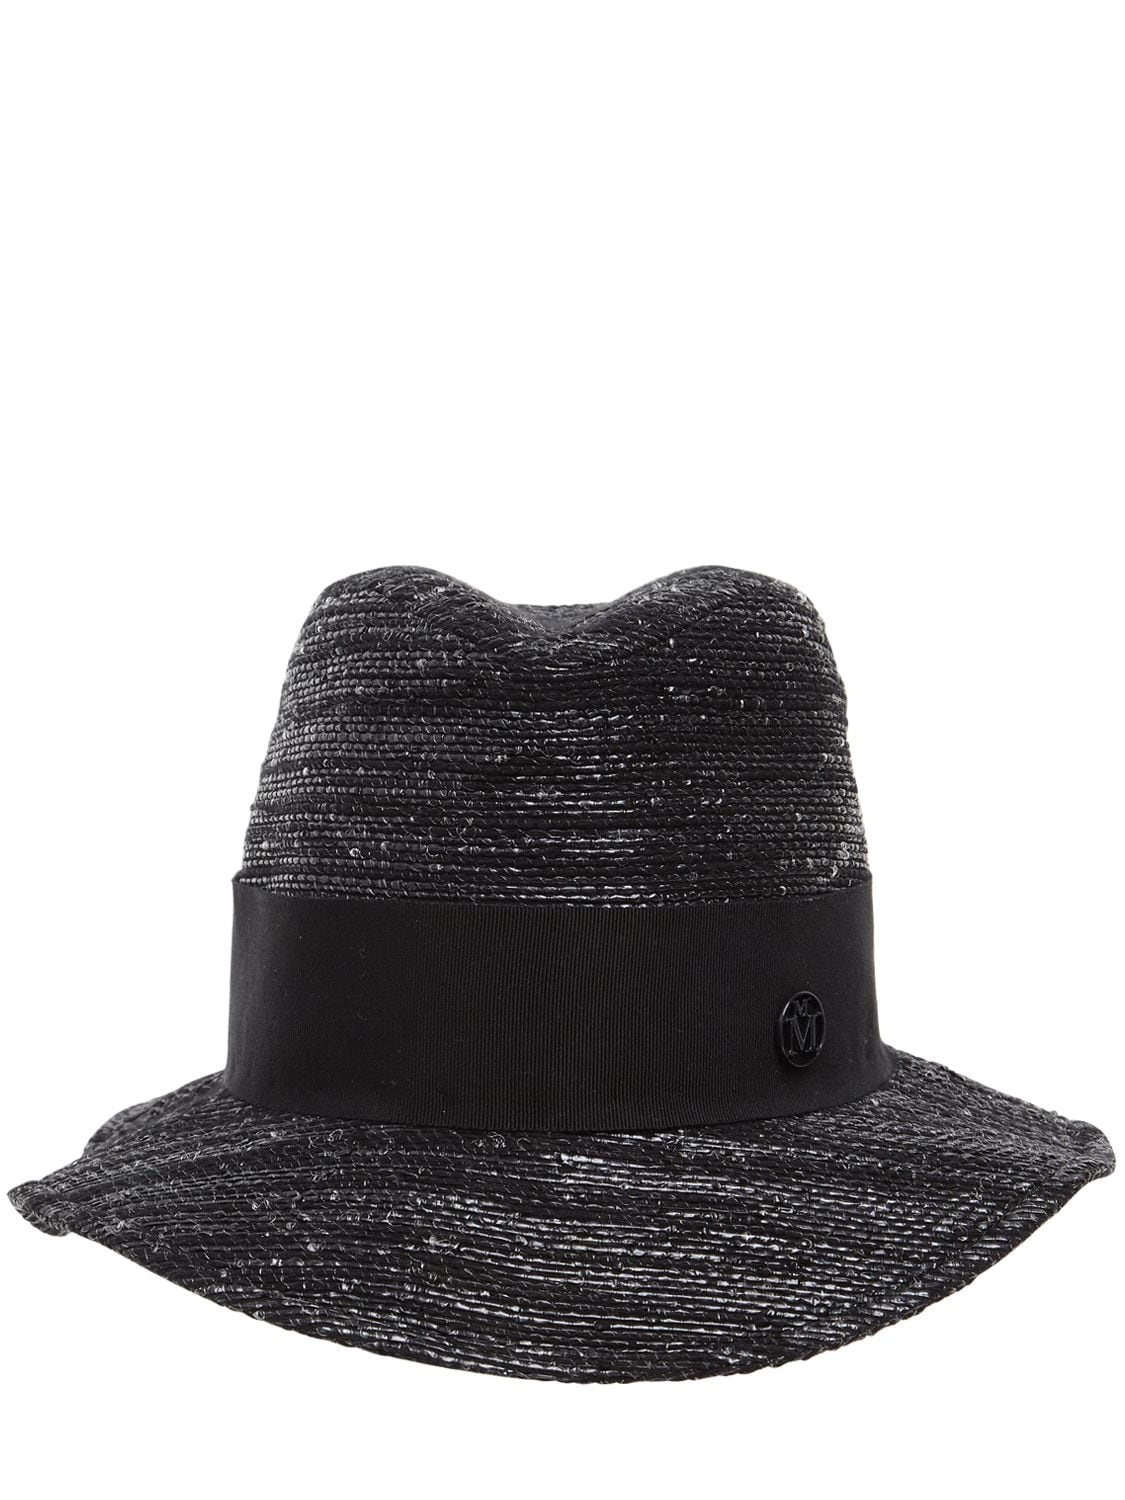 Maison Michel Bobbie Cotton, Bamboo & Lurex Hat In Black